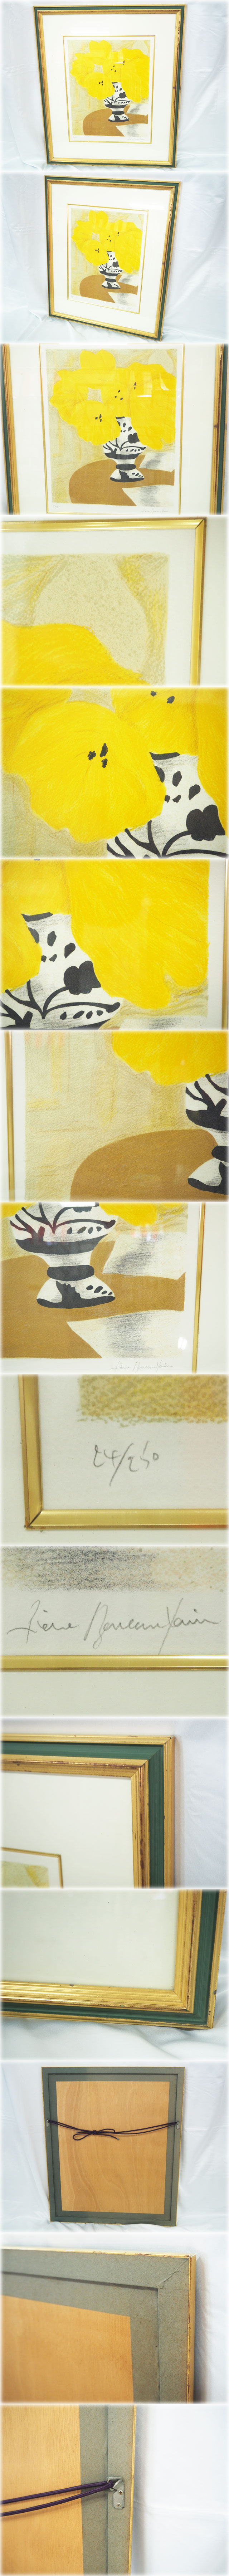 通販好評ピエール・ボンコンパン リトグラフ 「テーブルの上の黄色いブーケ」 額付 鉛筆サインNo.24/250 Pierre Boncompain 石版画、リトグラフ